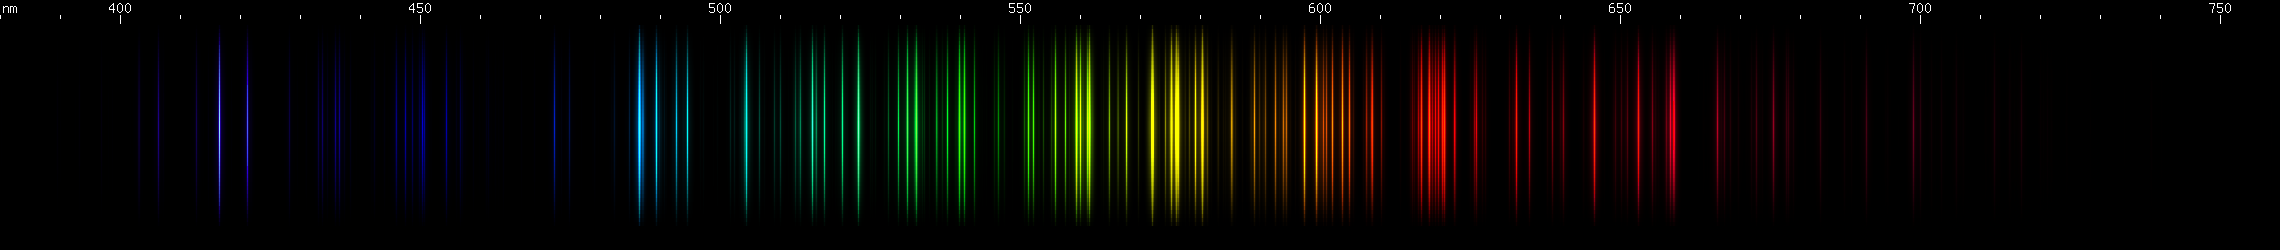 Spectral lines of Thorium.